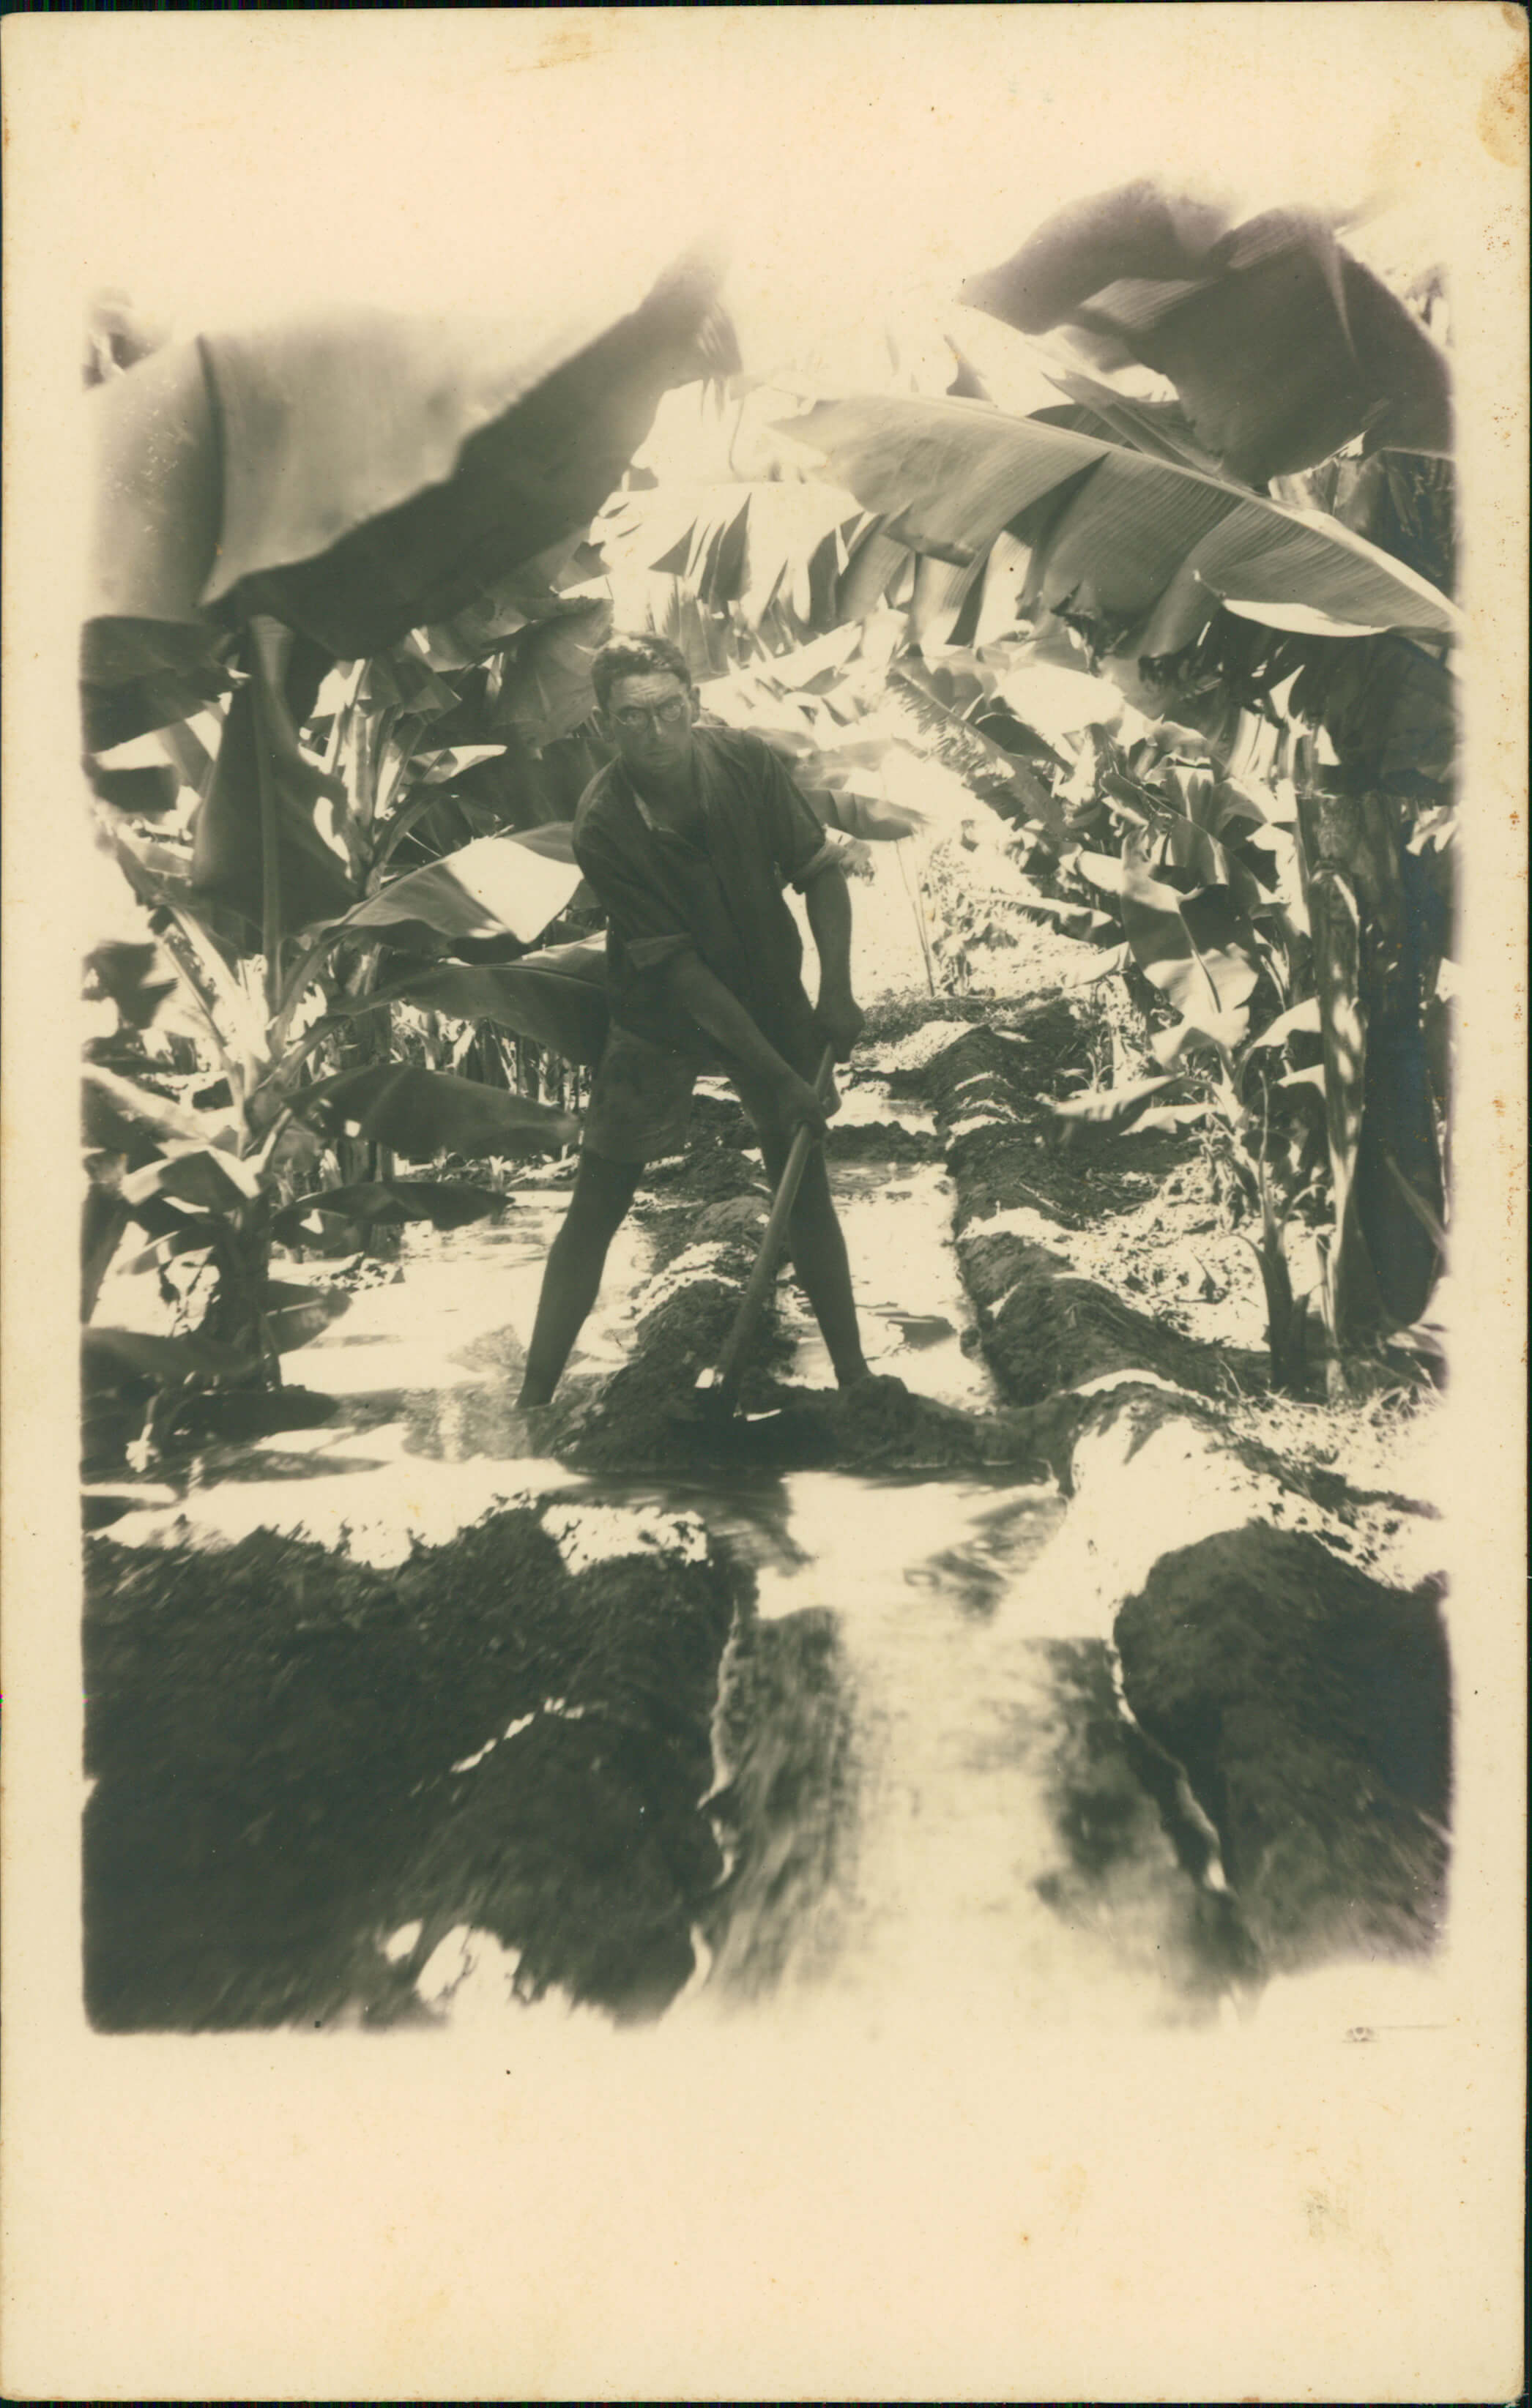 דוד הירשהורן חופר תעלה במטע הבננות המשפחתי, שנות ה-30